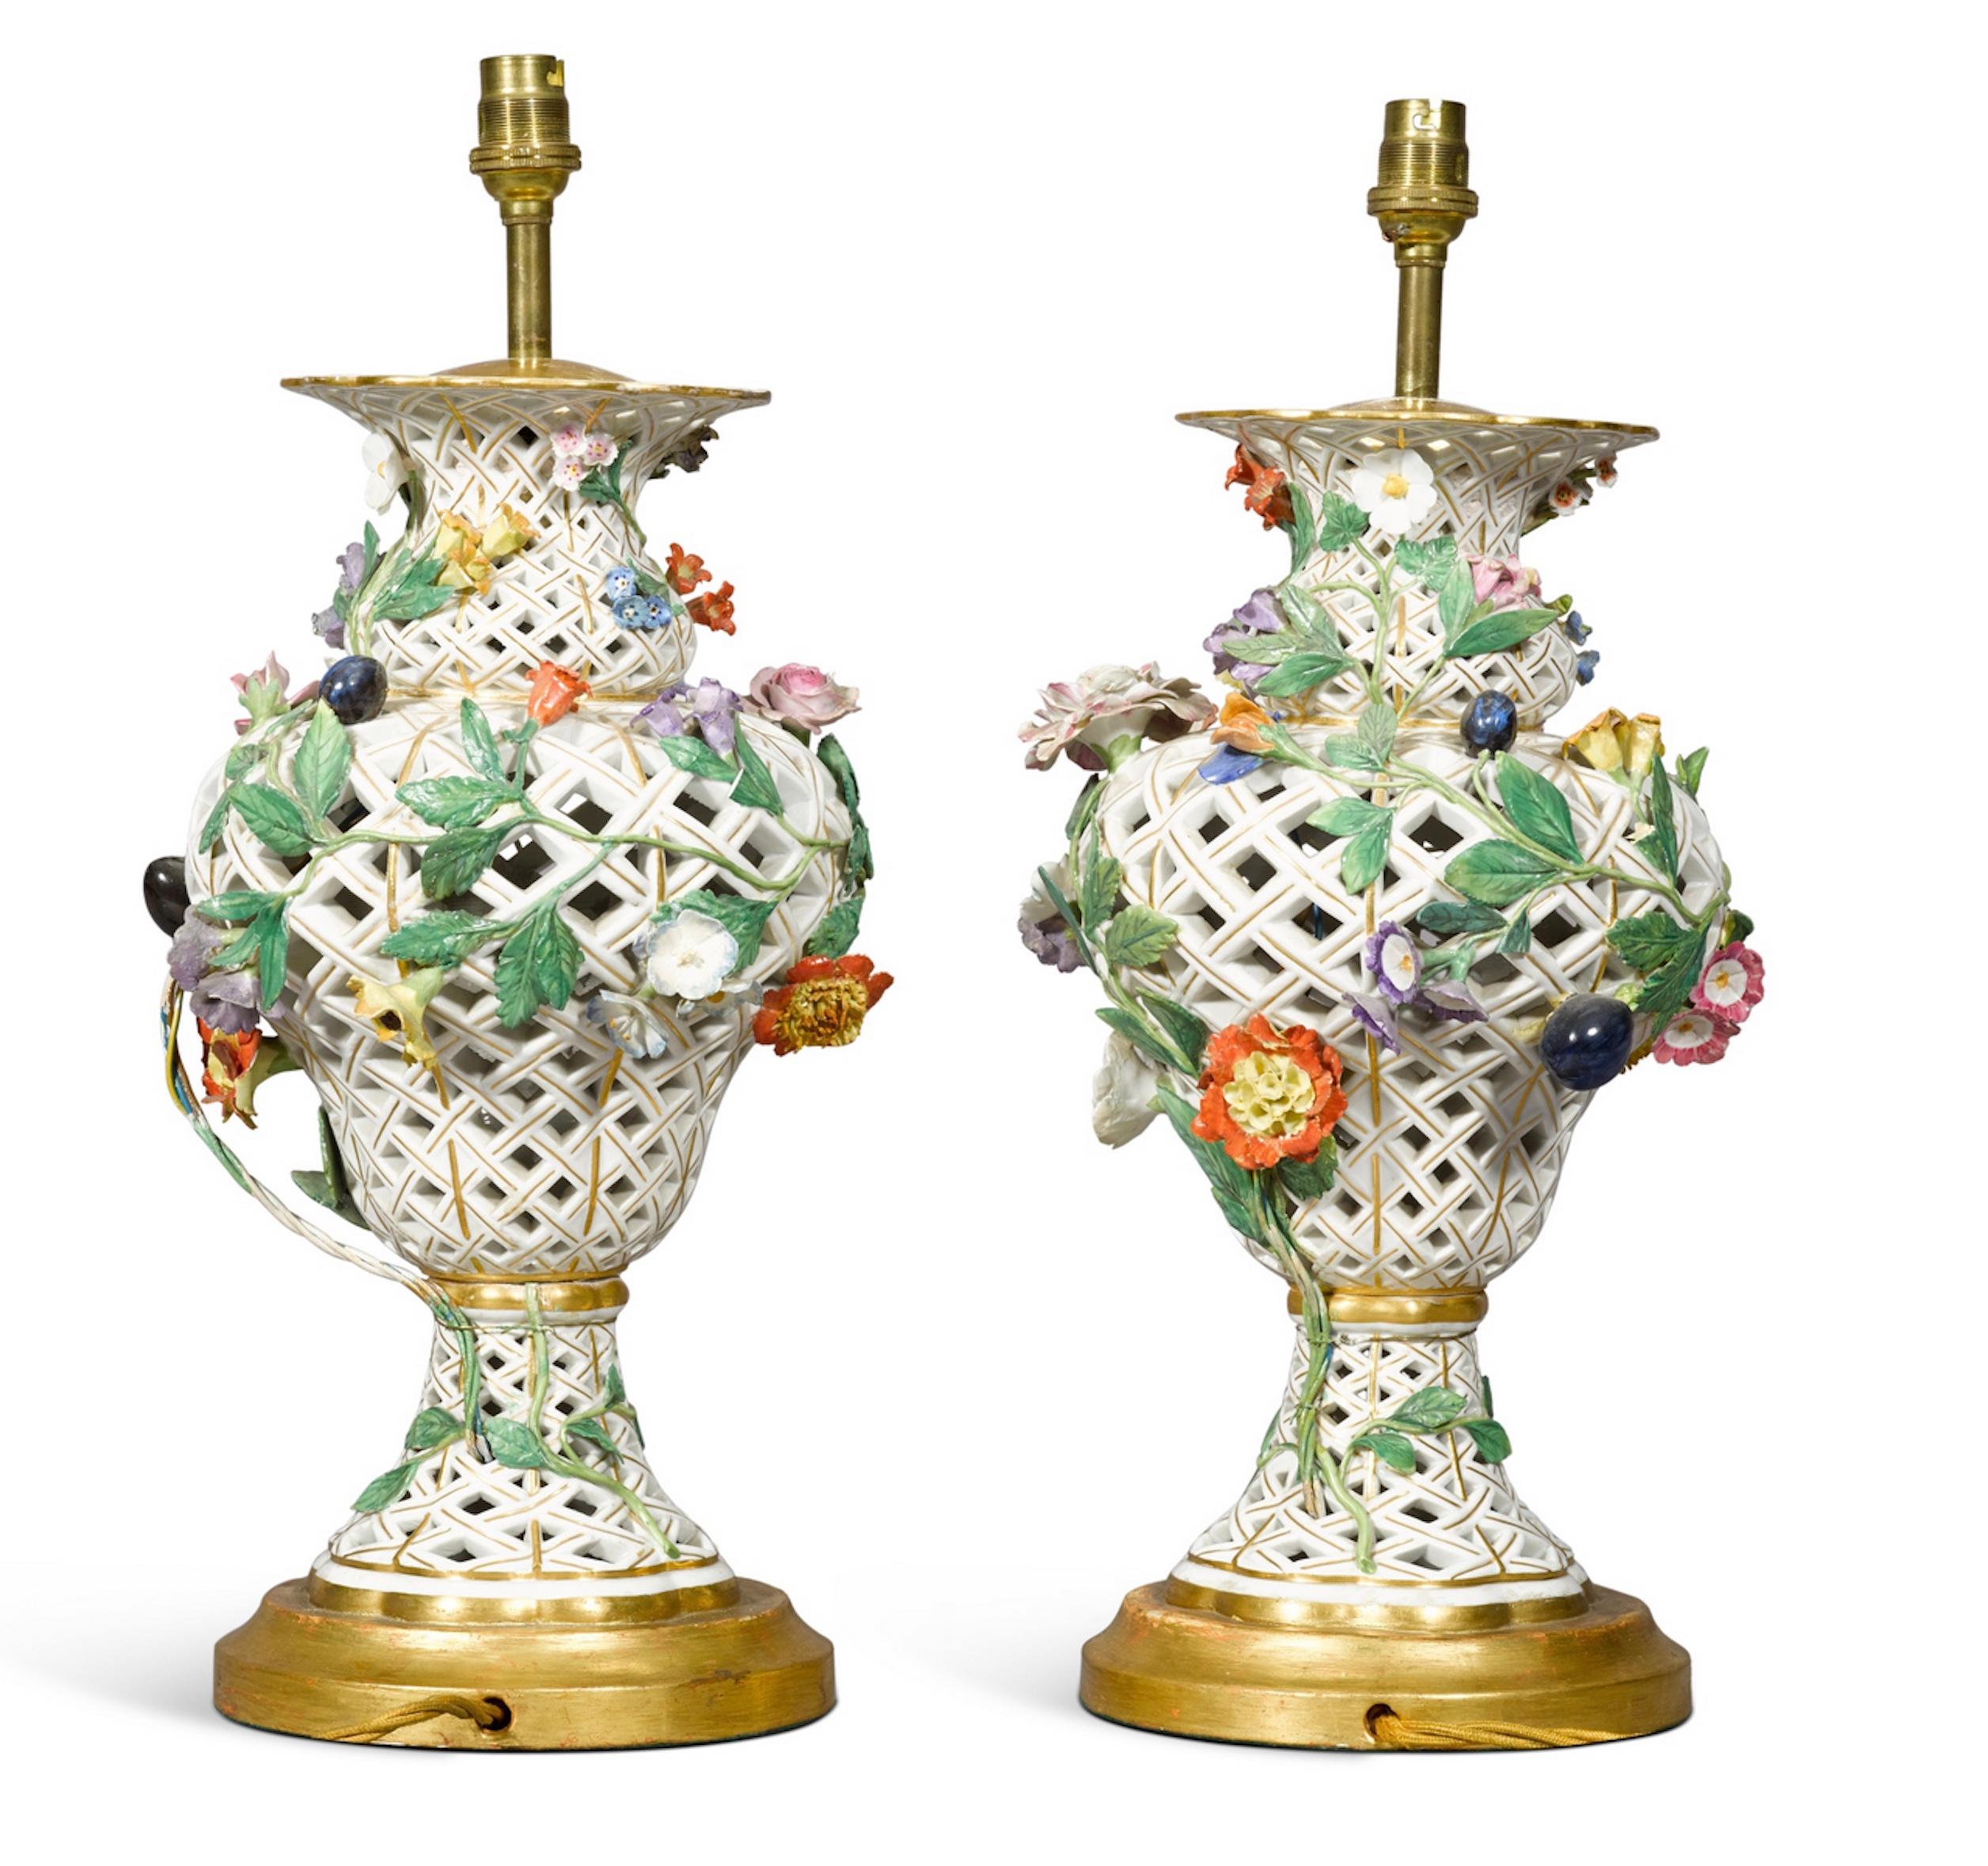 Une paire rare de lampes de table en porcelaine continentale, probablement Samson dans le style de Meissen, 19ème siècle de forme balustre, percé d'un motif de treillis et appliqué de fruits et de fleurs, maintenant monté comme une lampe avec une